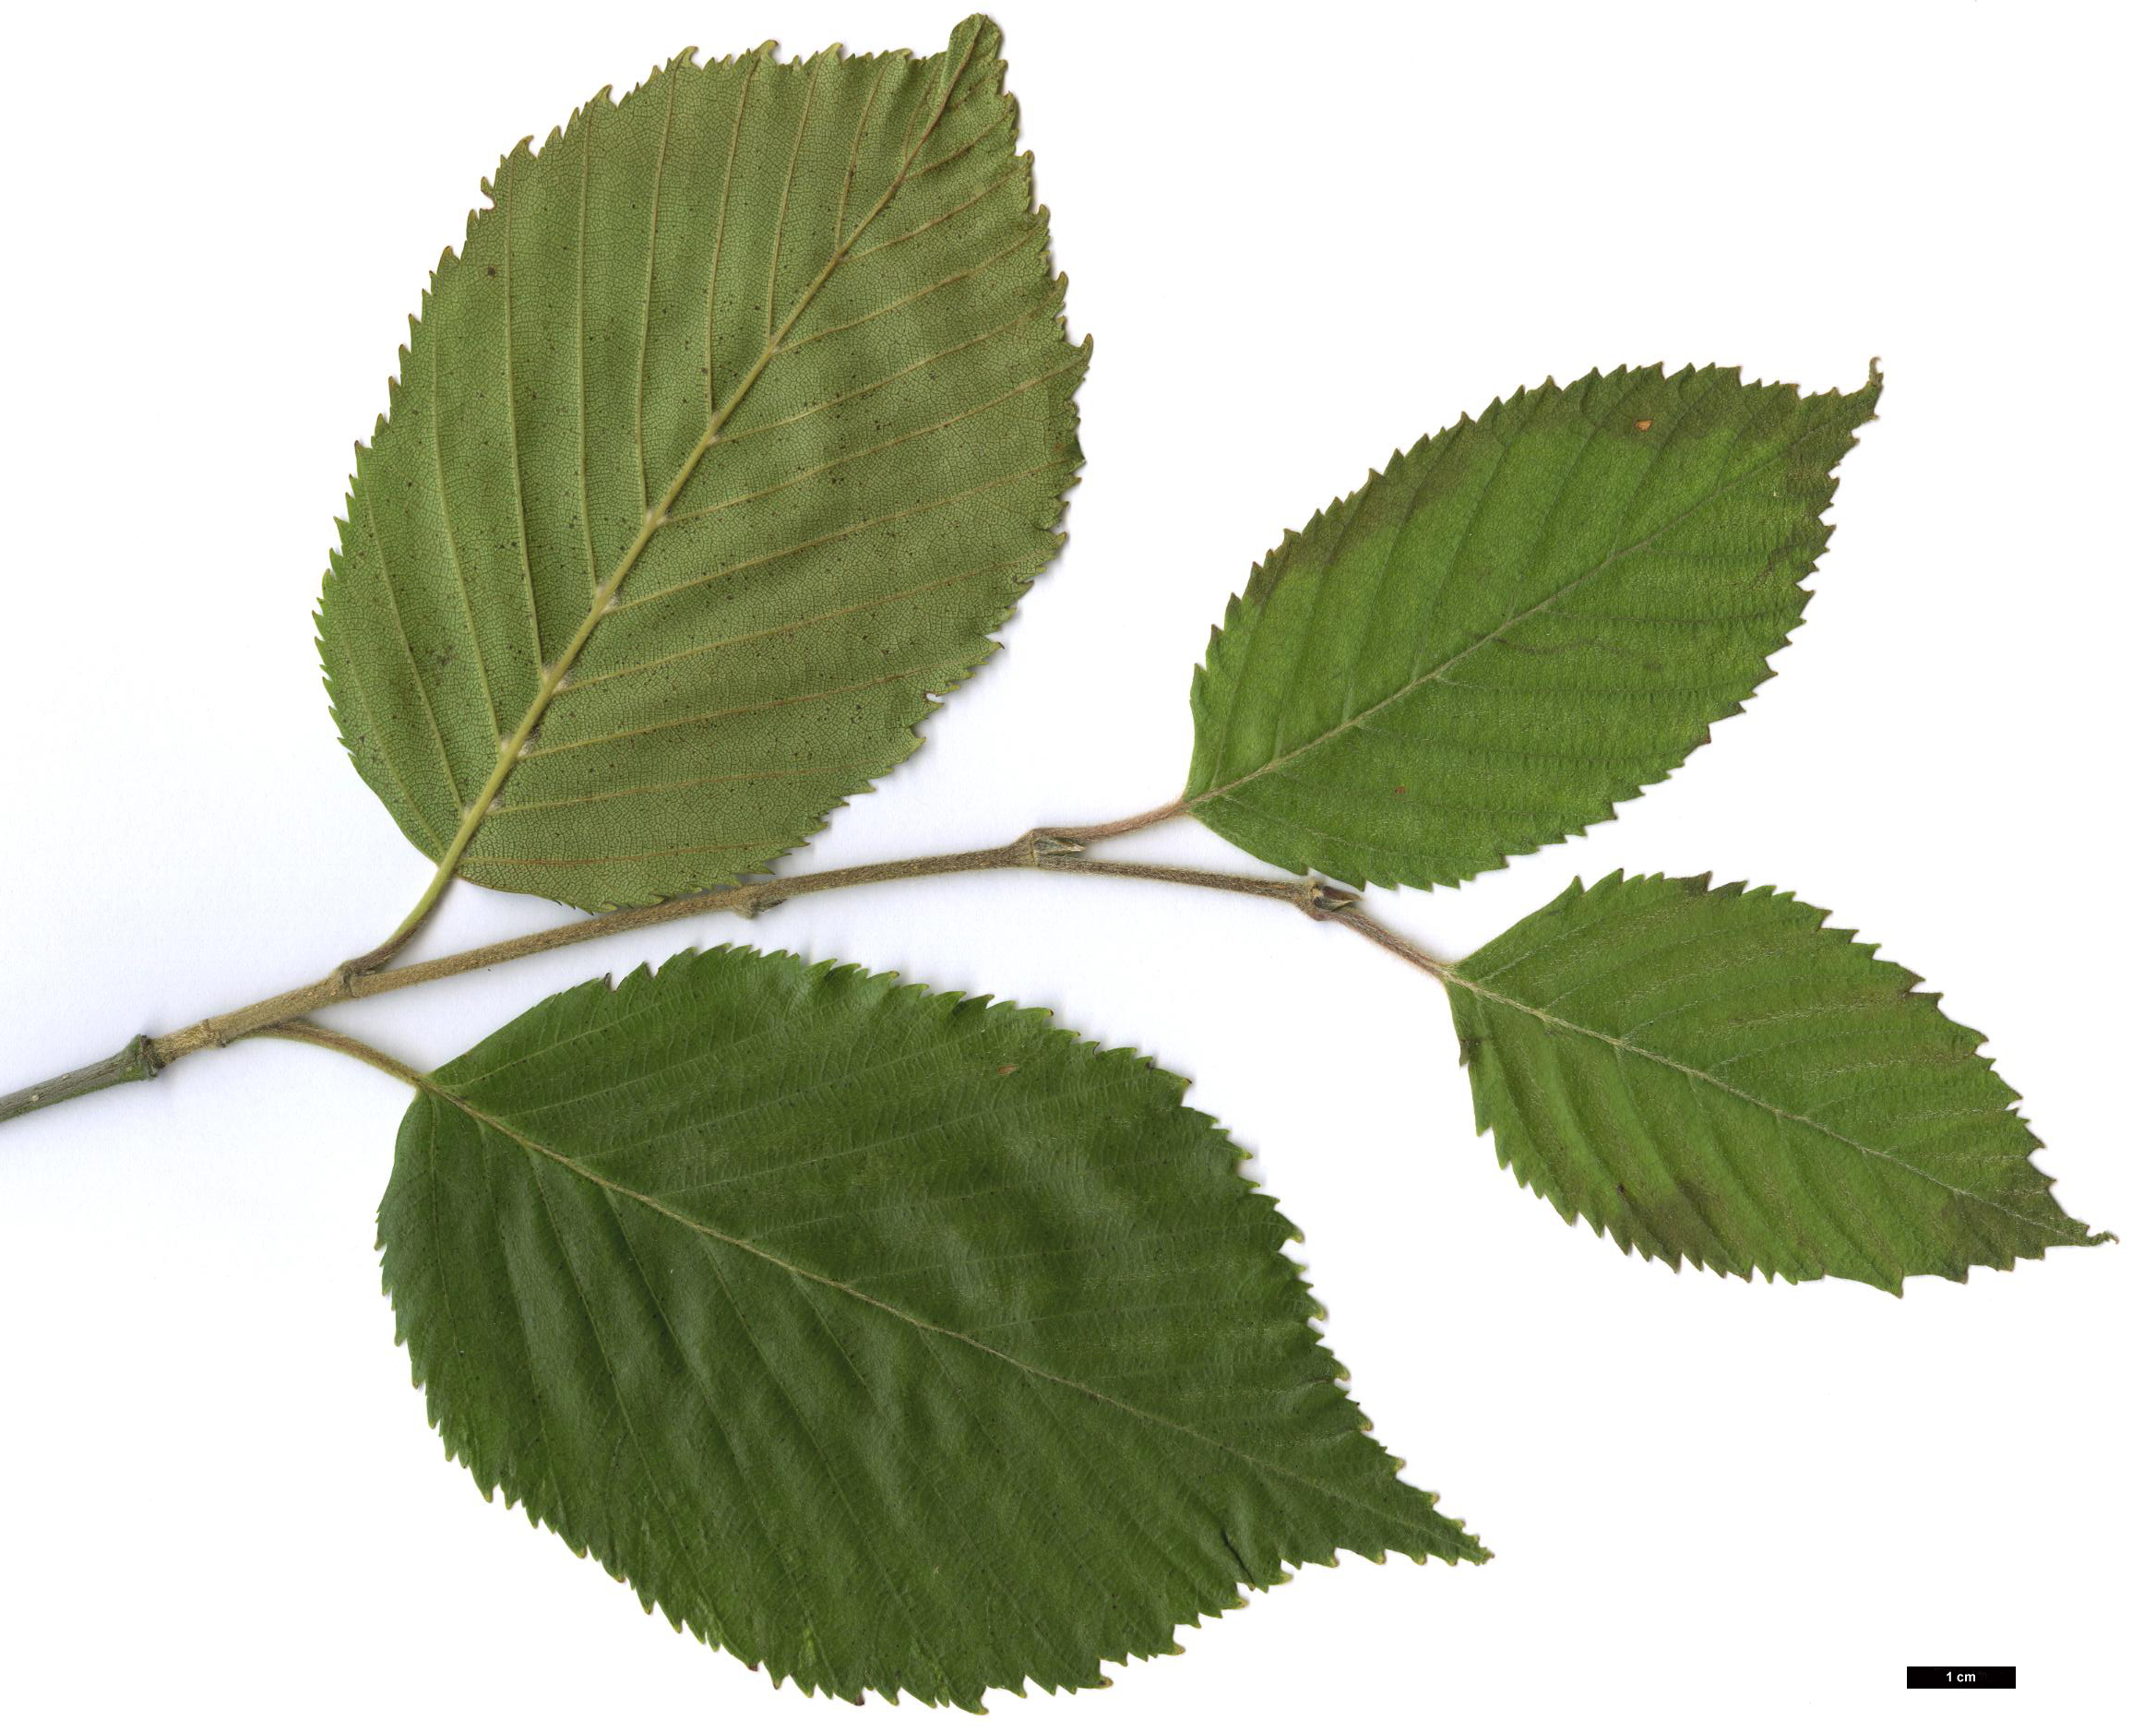 High resolution image: Family: Betulaceae - Genus: Betula - Taxon: utilis - SpeciesSub: subsp. jacquemontii 'Inverleith'